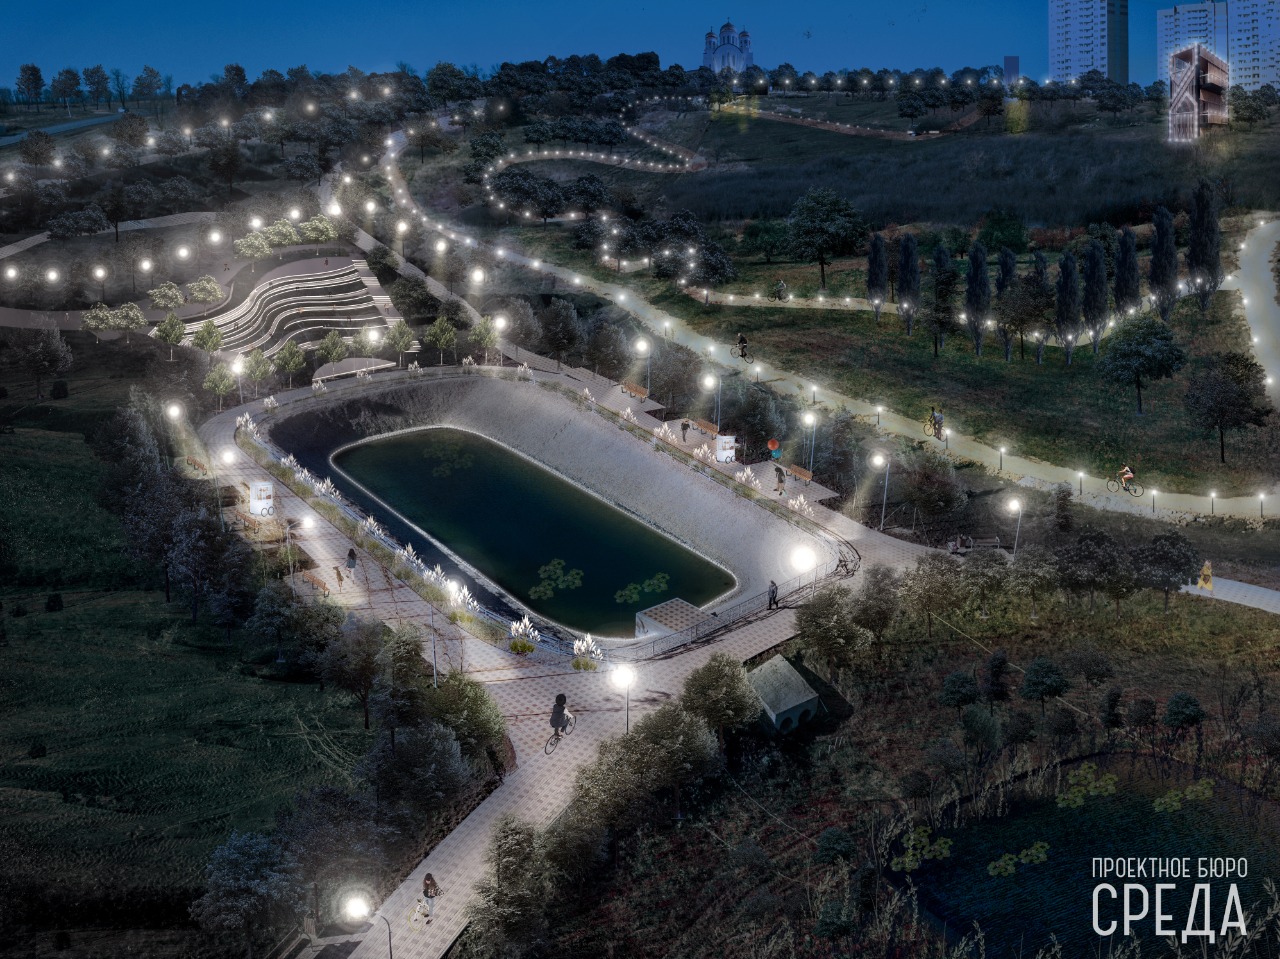 Эксперты обсудят дизайн нового парка в Суворовском районе Ростова-на-Дону